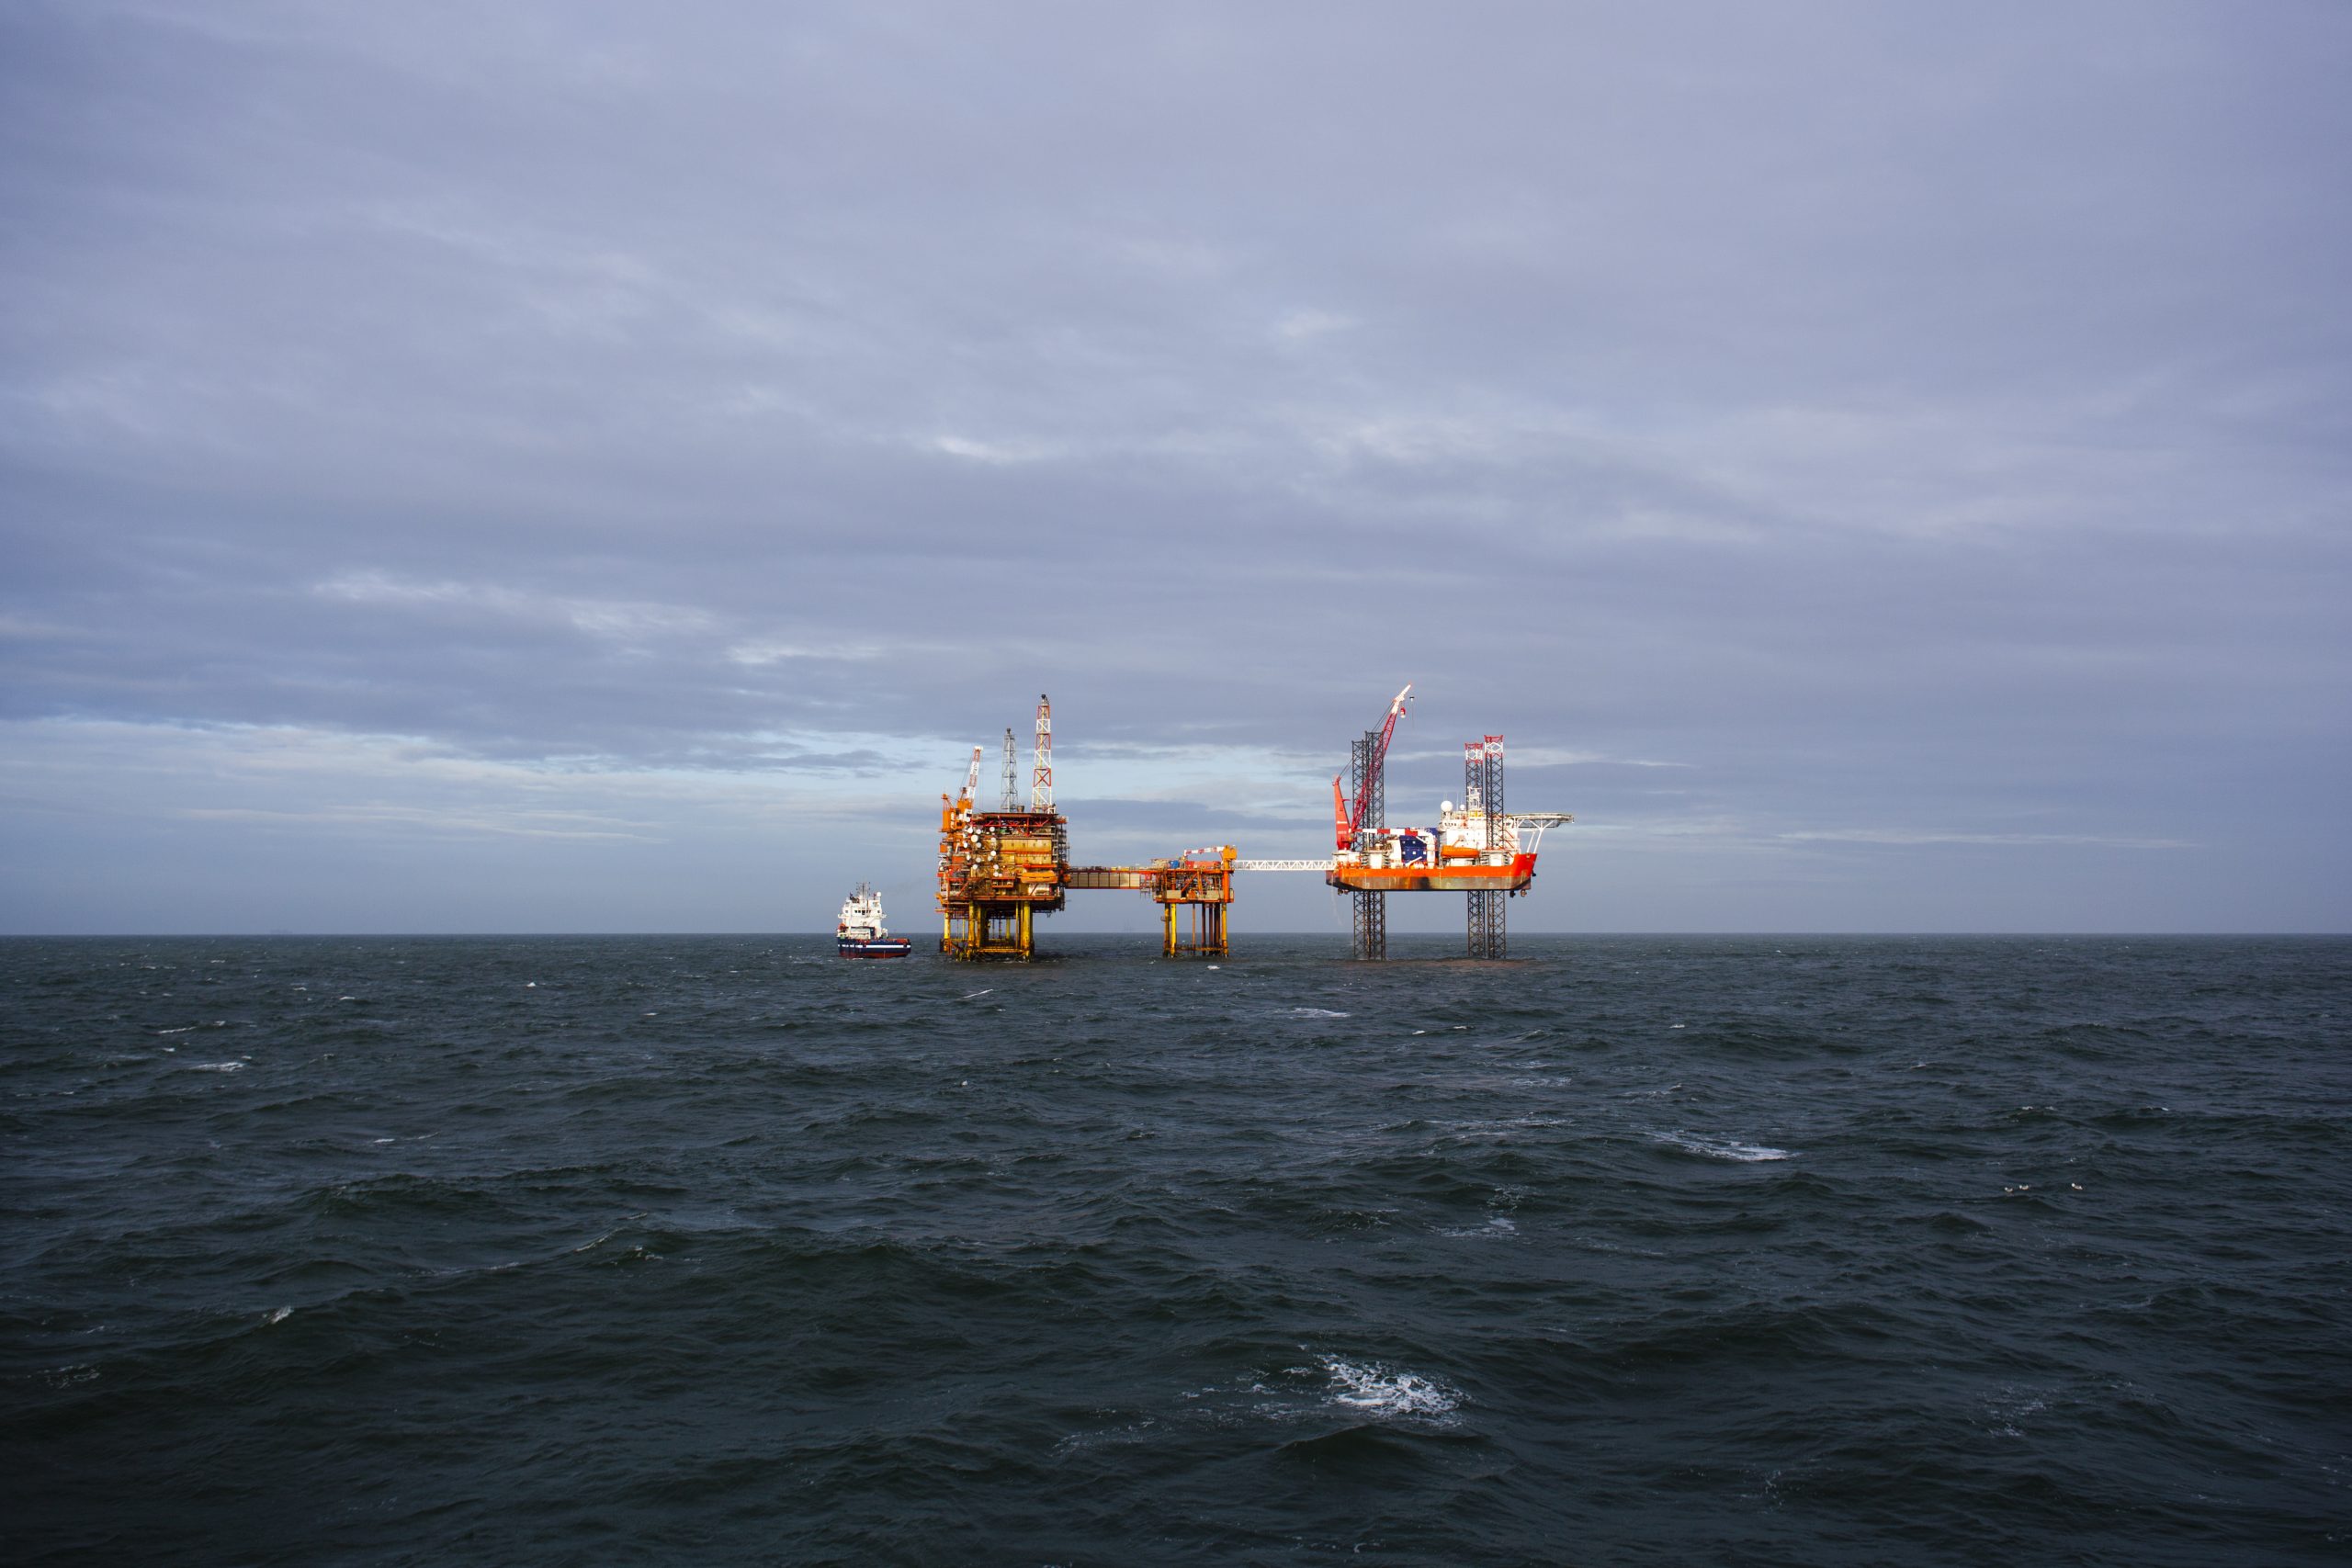 Oil platform on the North sea